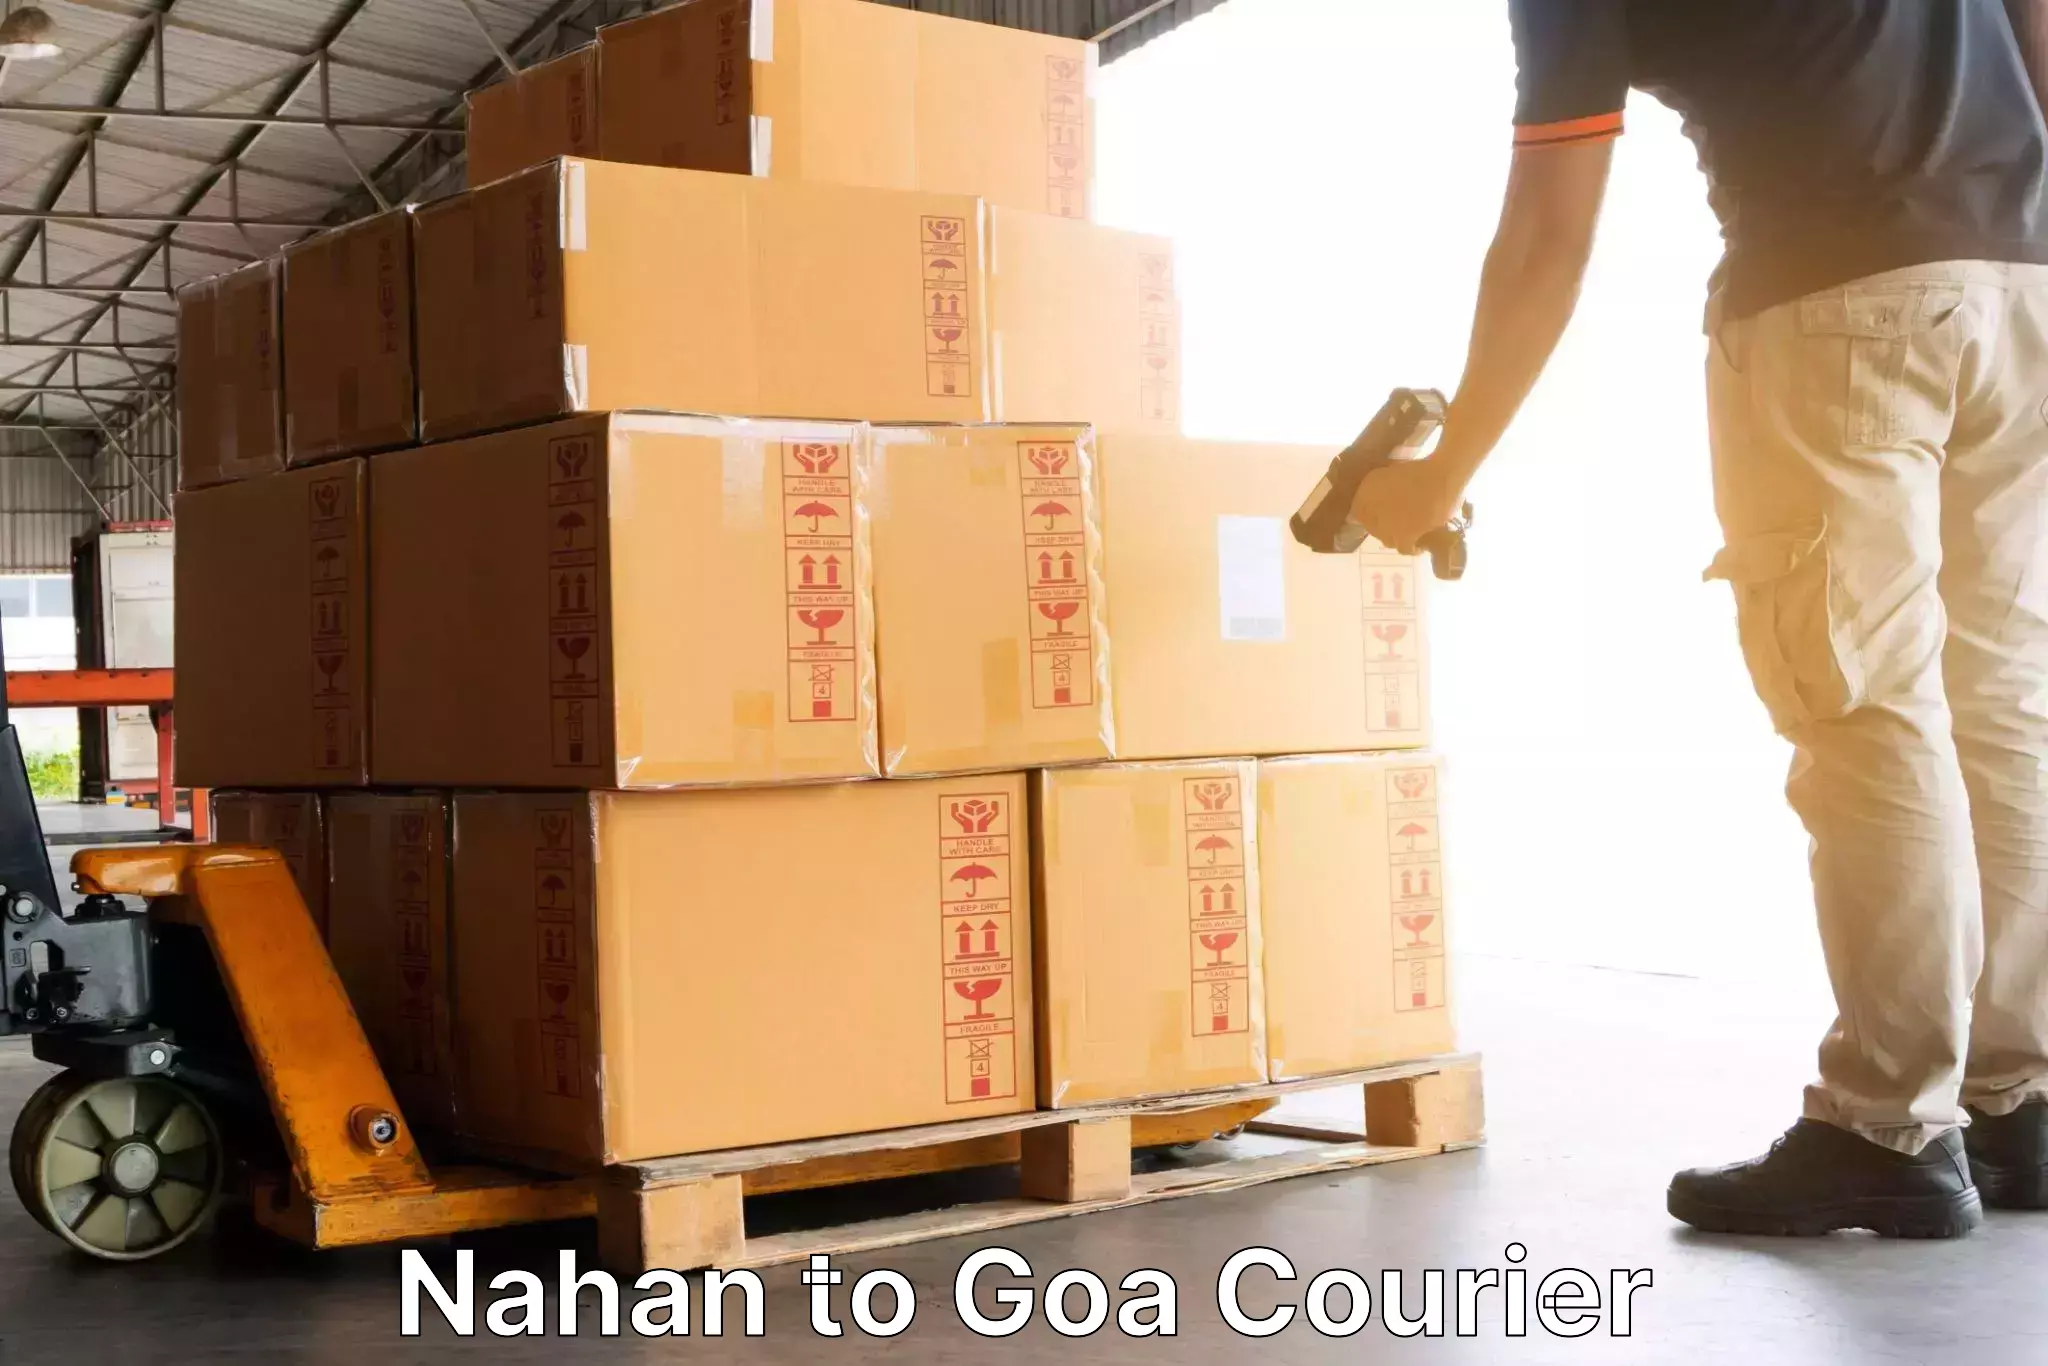 Courier service innovation Nahan to Sanvordem